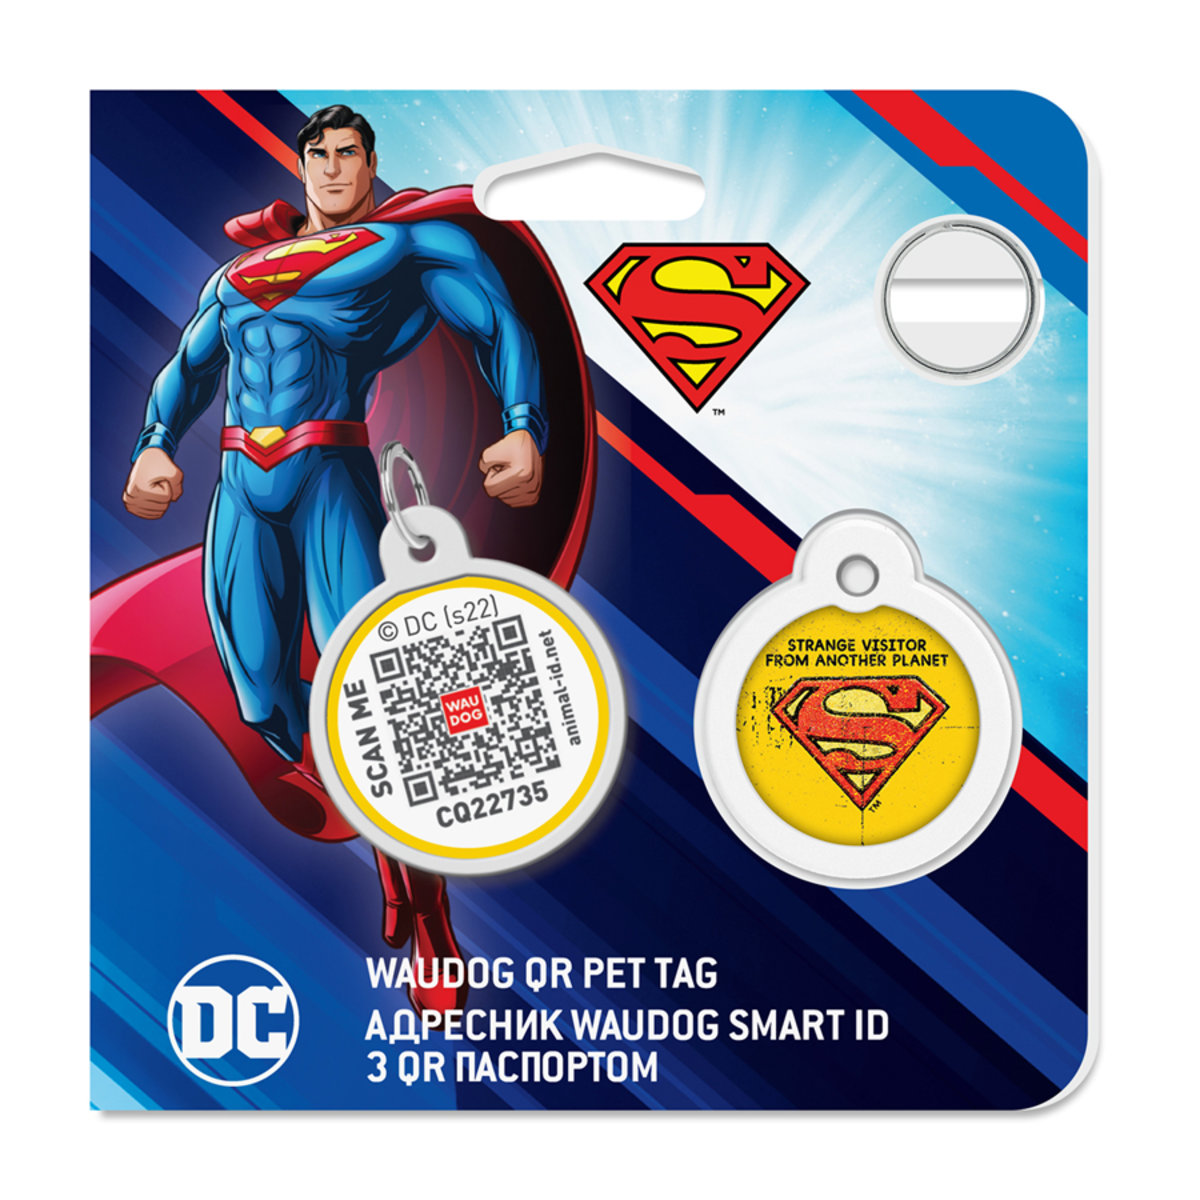 Адресник для собак і котів Waudog Smart ID з QR паспортом, Супермен вінтаж, S, діаметр 25 мм - фото 5